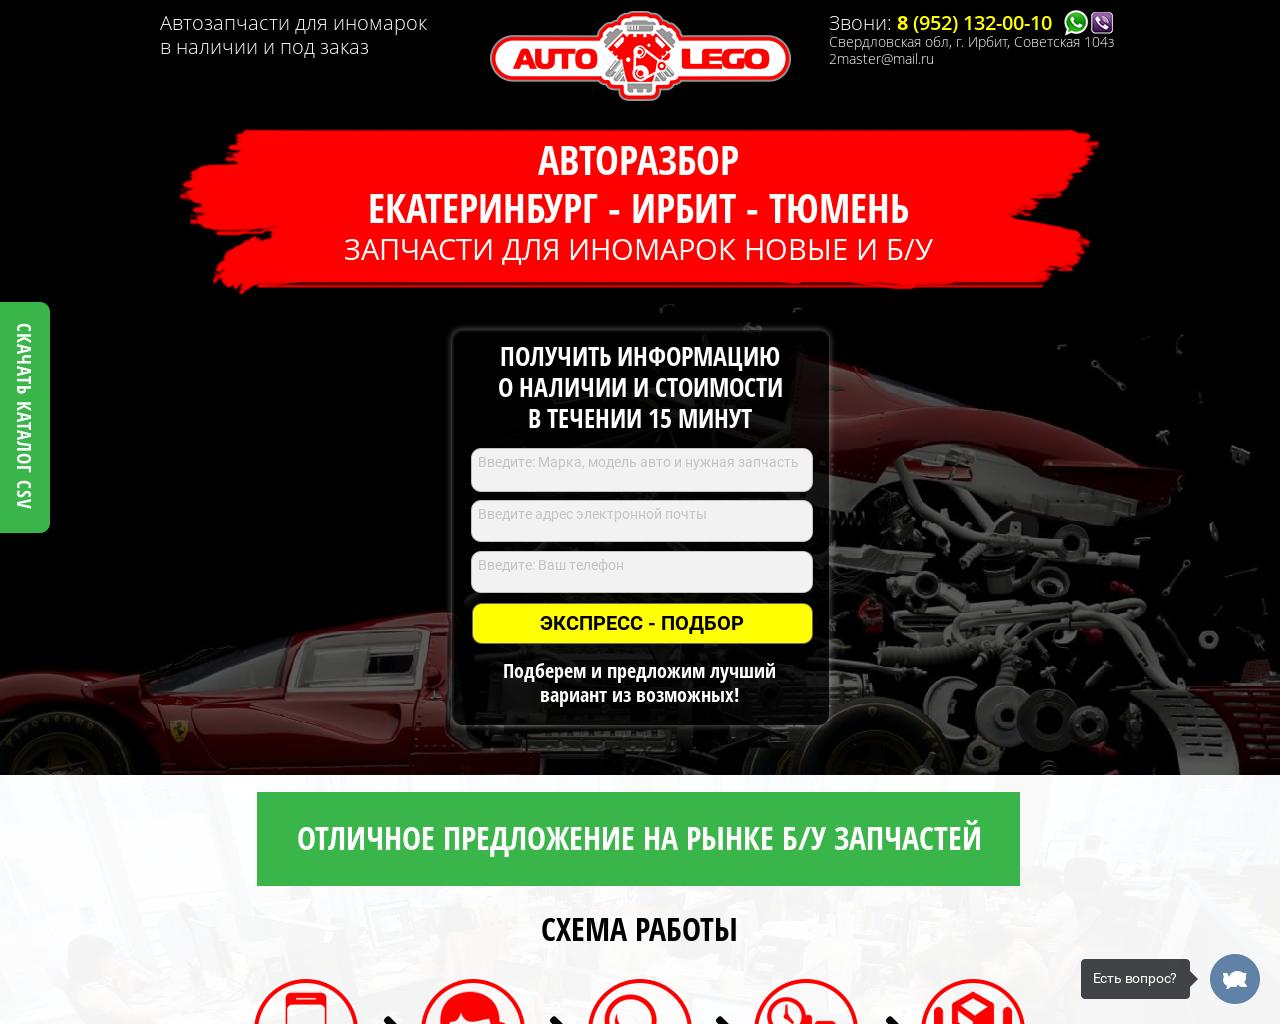 Изображение сайта auto-lego66.ru в разрешении 1280x1024